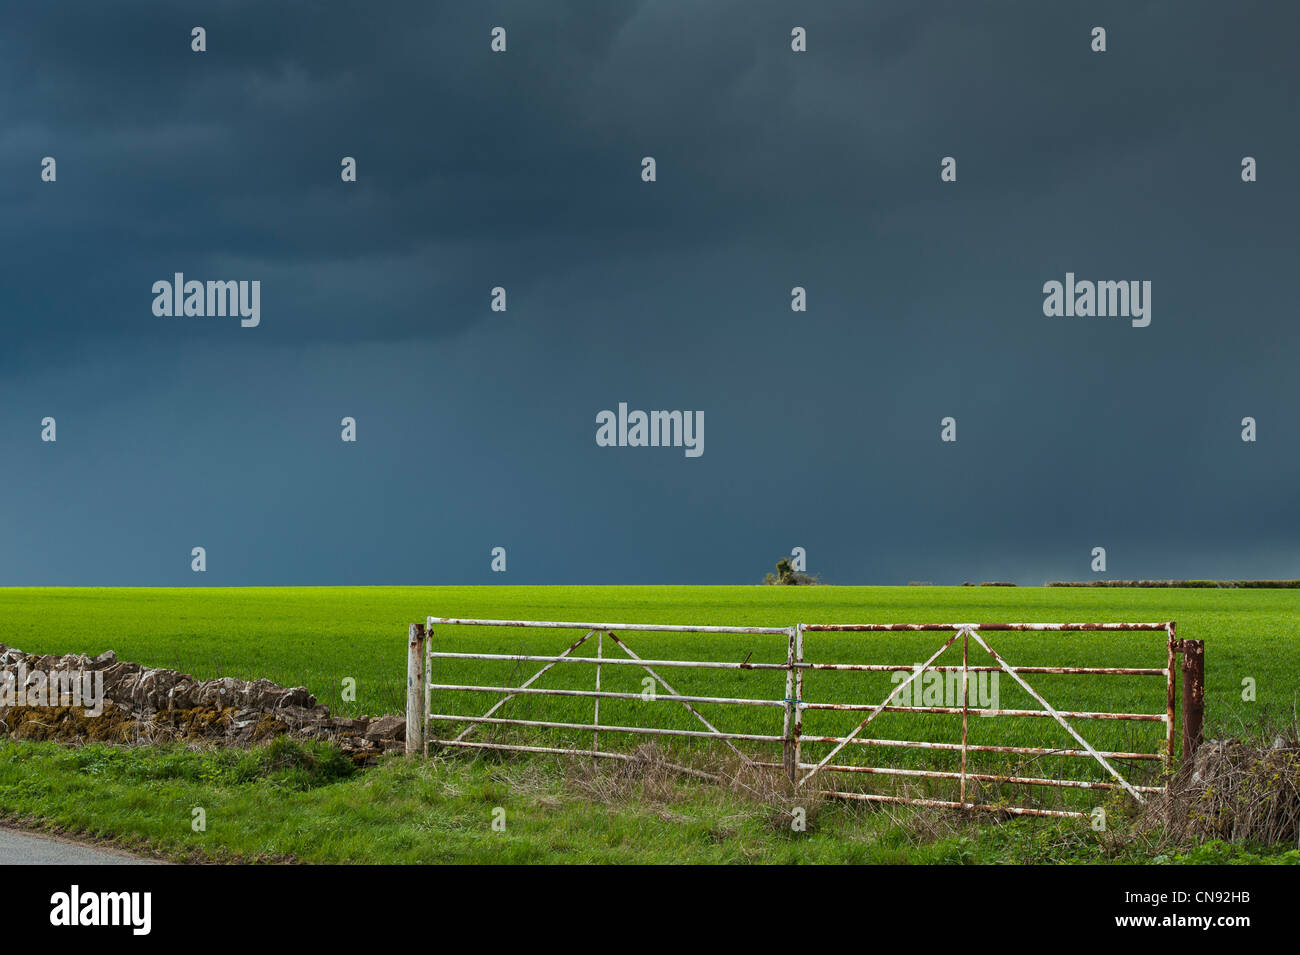 Pluie nuages orageux sur une terrasse bien allumé champ de blé dans la campagne anglaise Banque D'Images